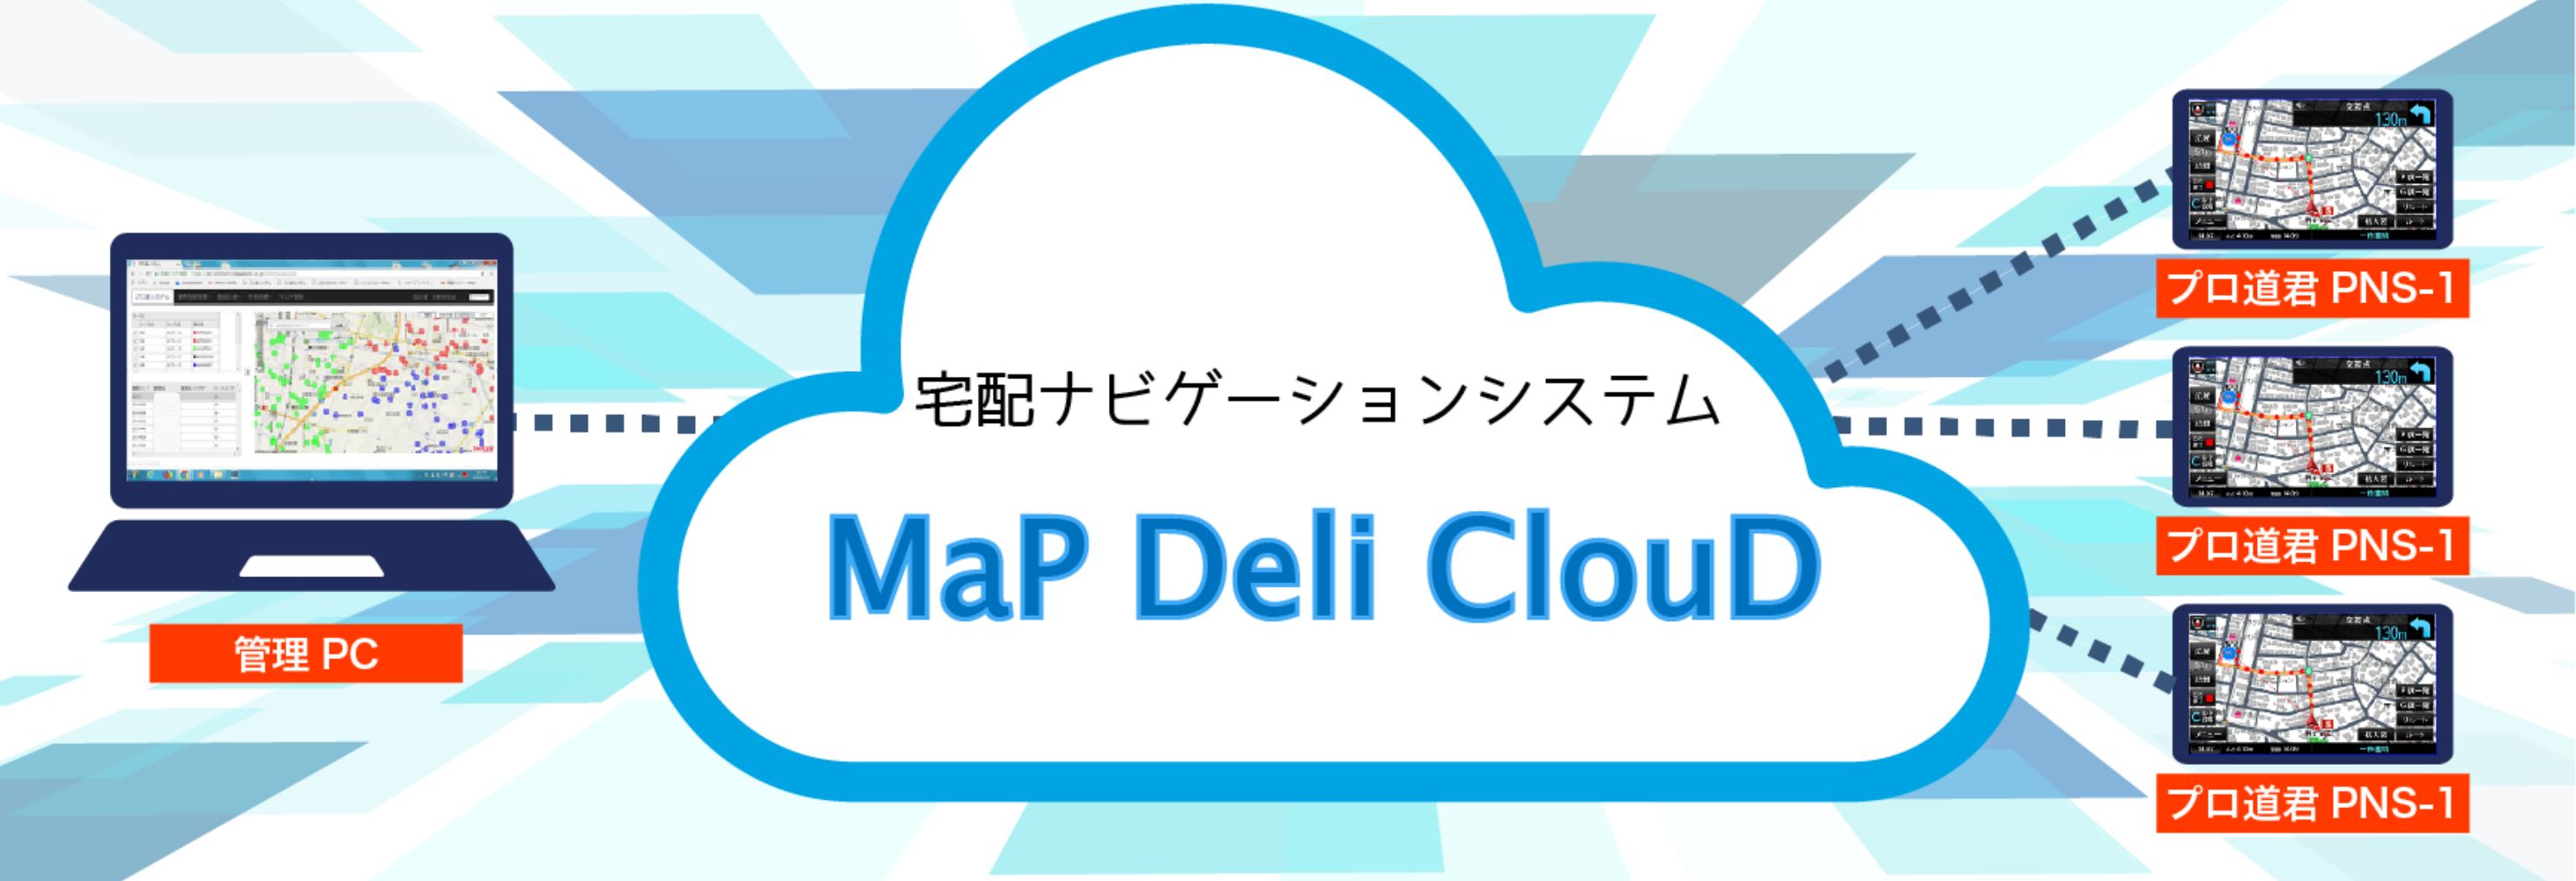 宅配ナビゲーションシステム Map Deli Cloud